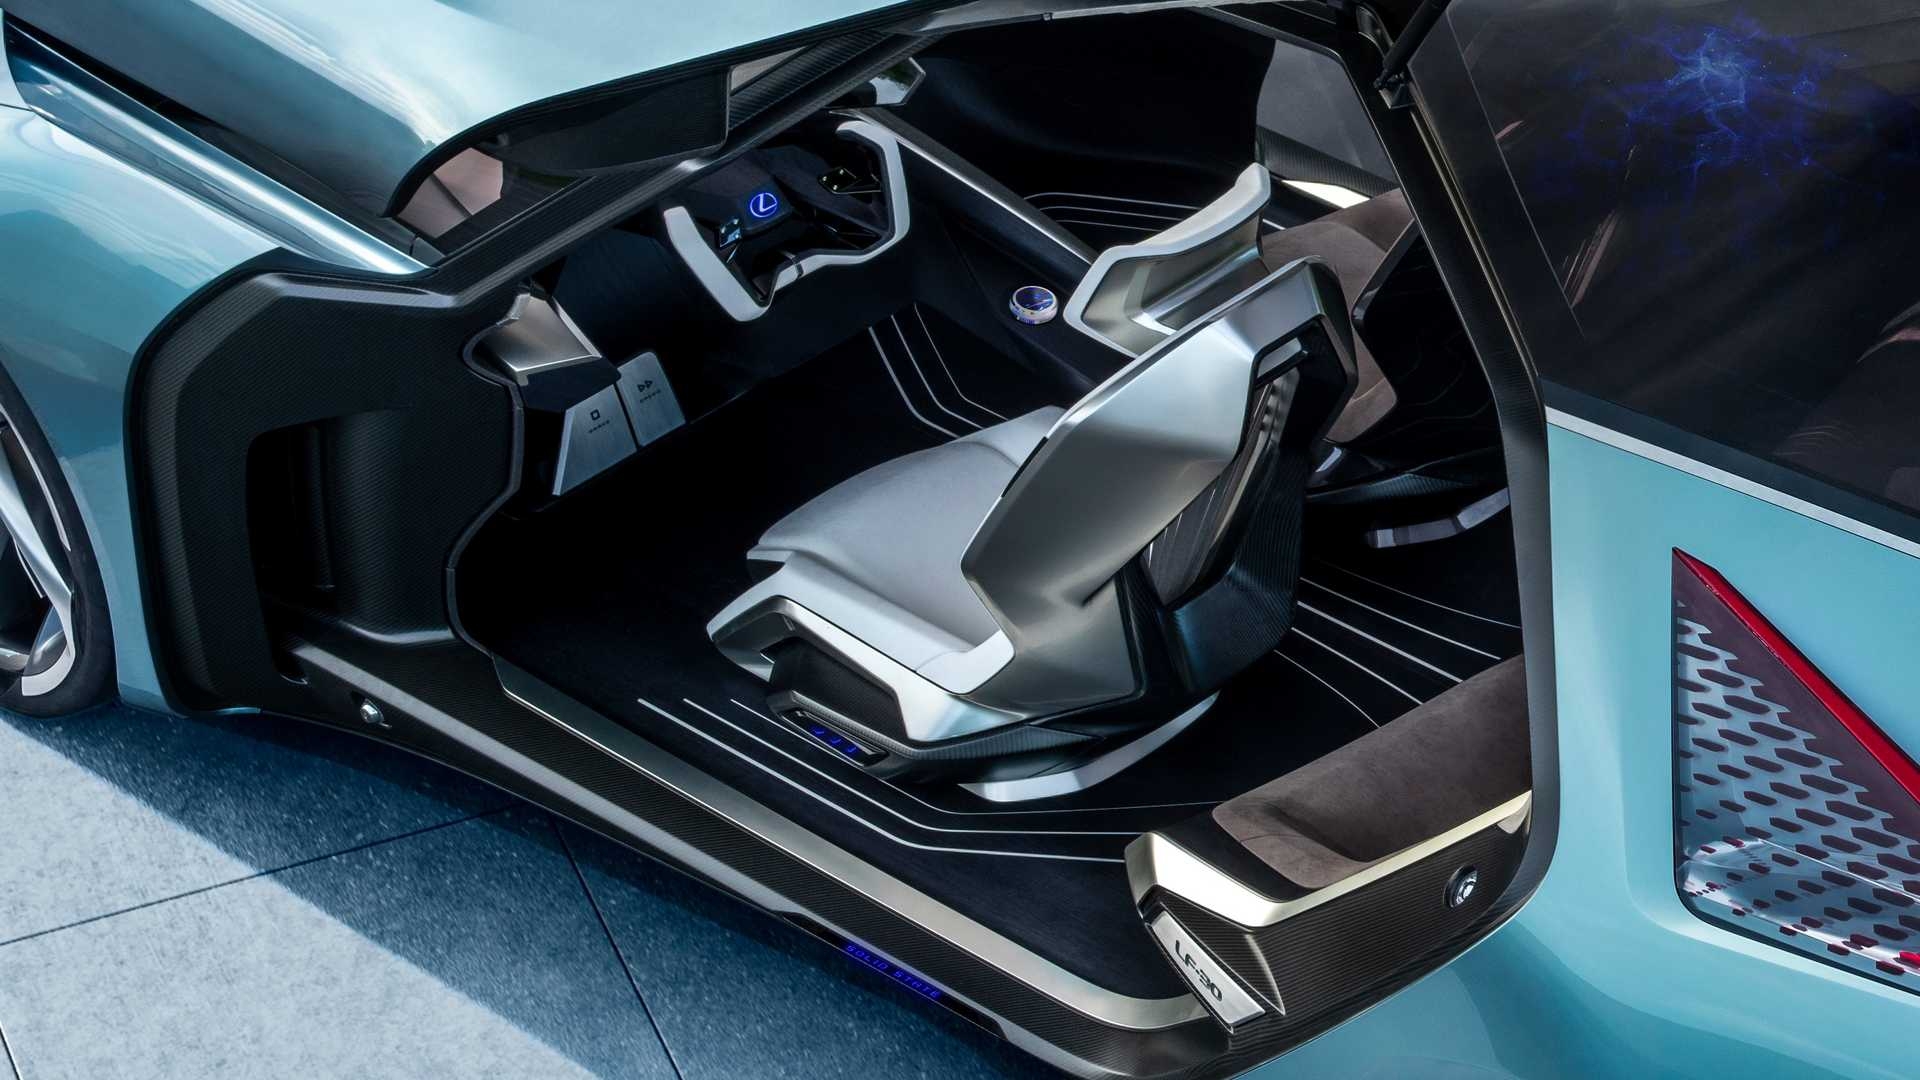 ส่งสัญญาณ! Lexus จดเครื่องหมายการค้า RZ 450e เชื่อรุกตลาดเอสยูวีไฟฟ้ารุ่นใหม่